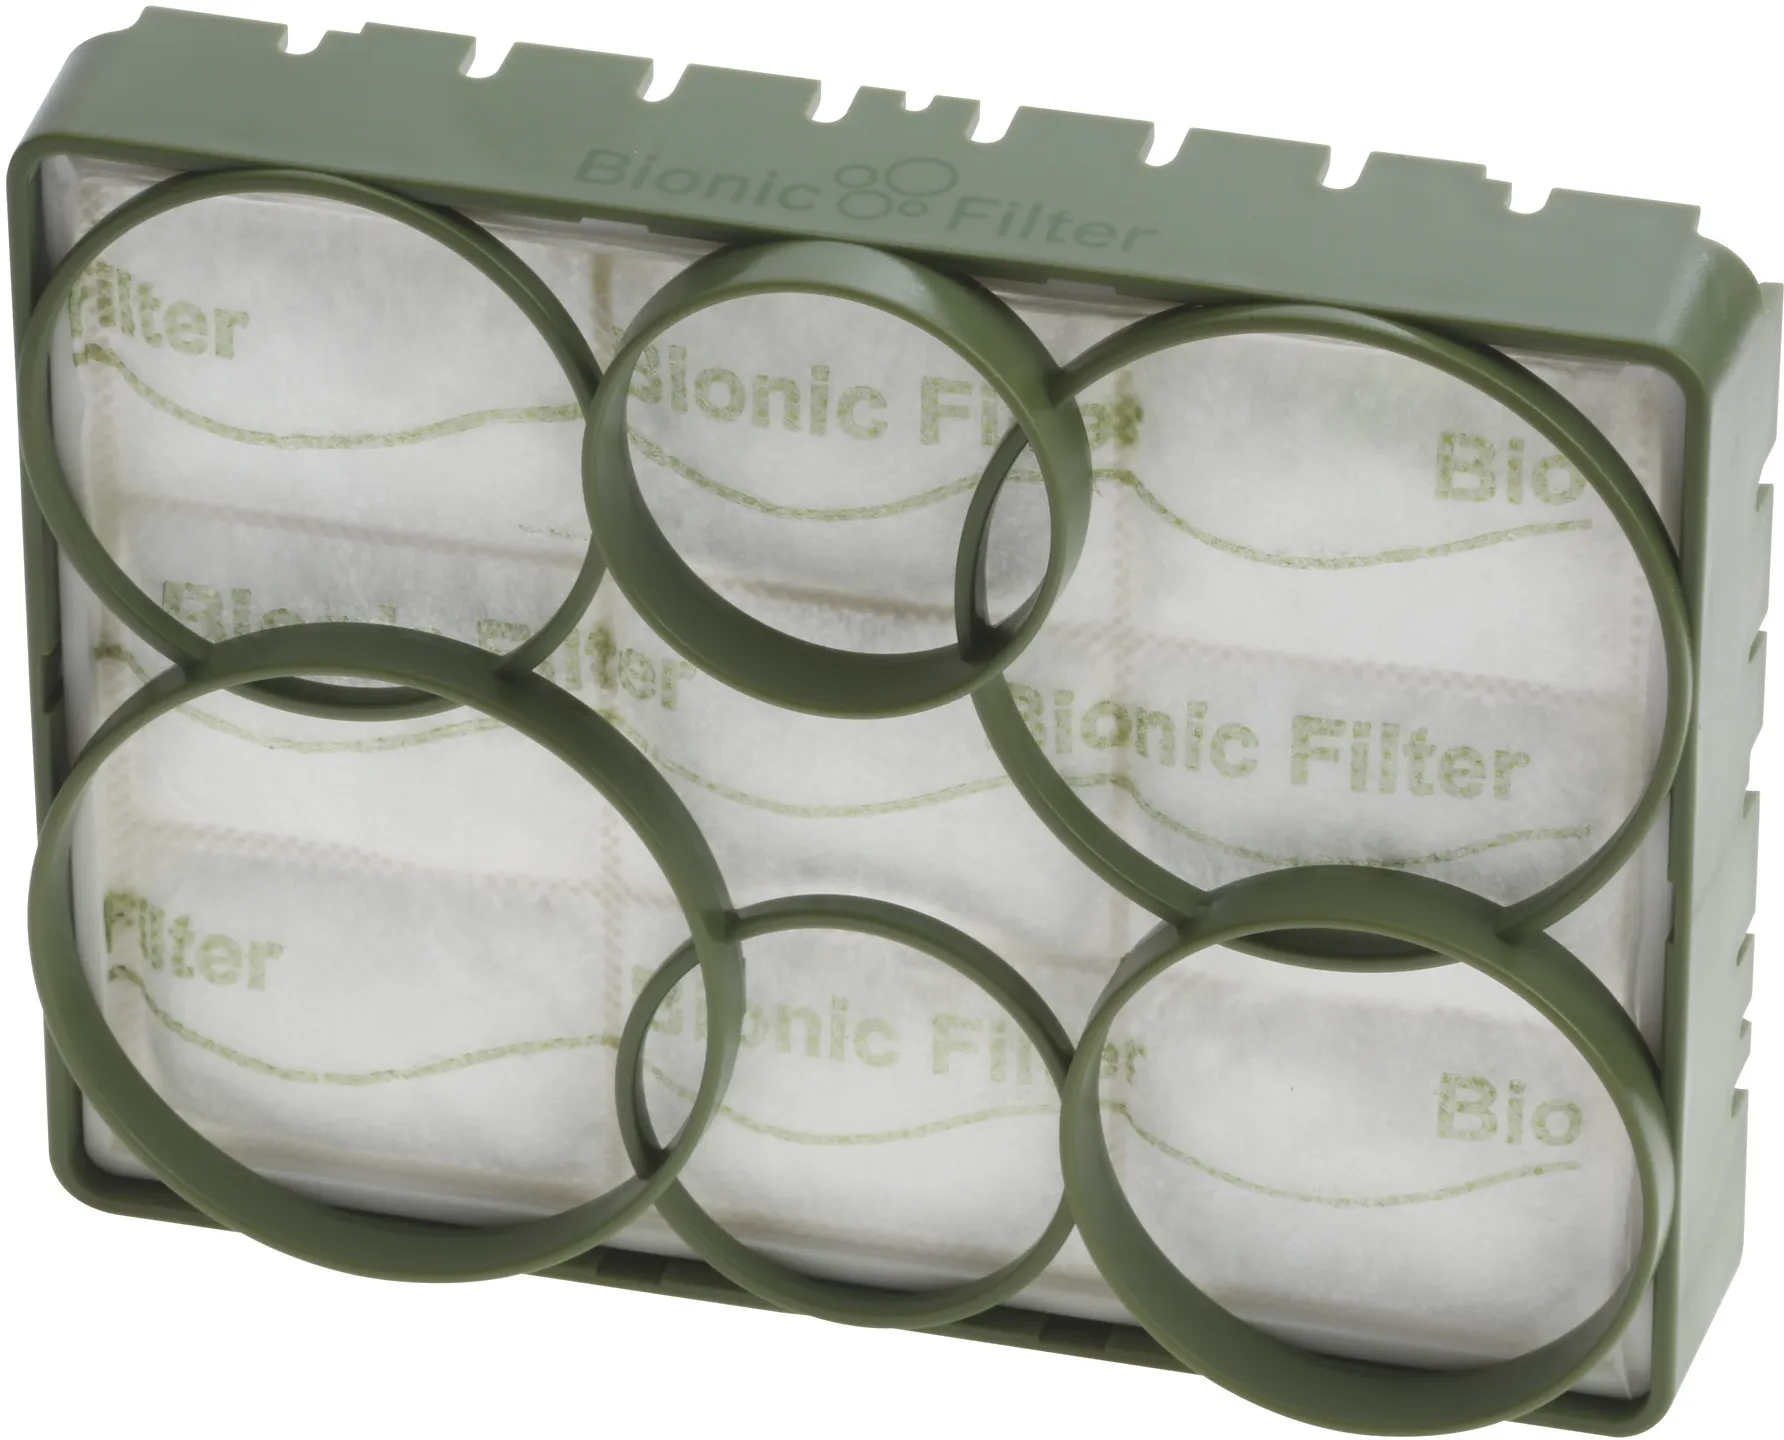 Bionic filter voor stofzuiger - 1 stuk 